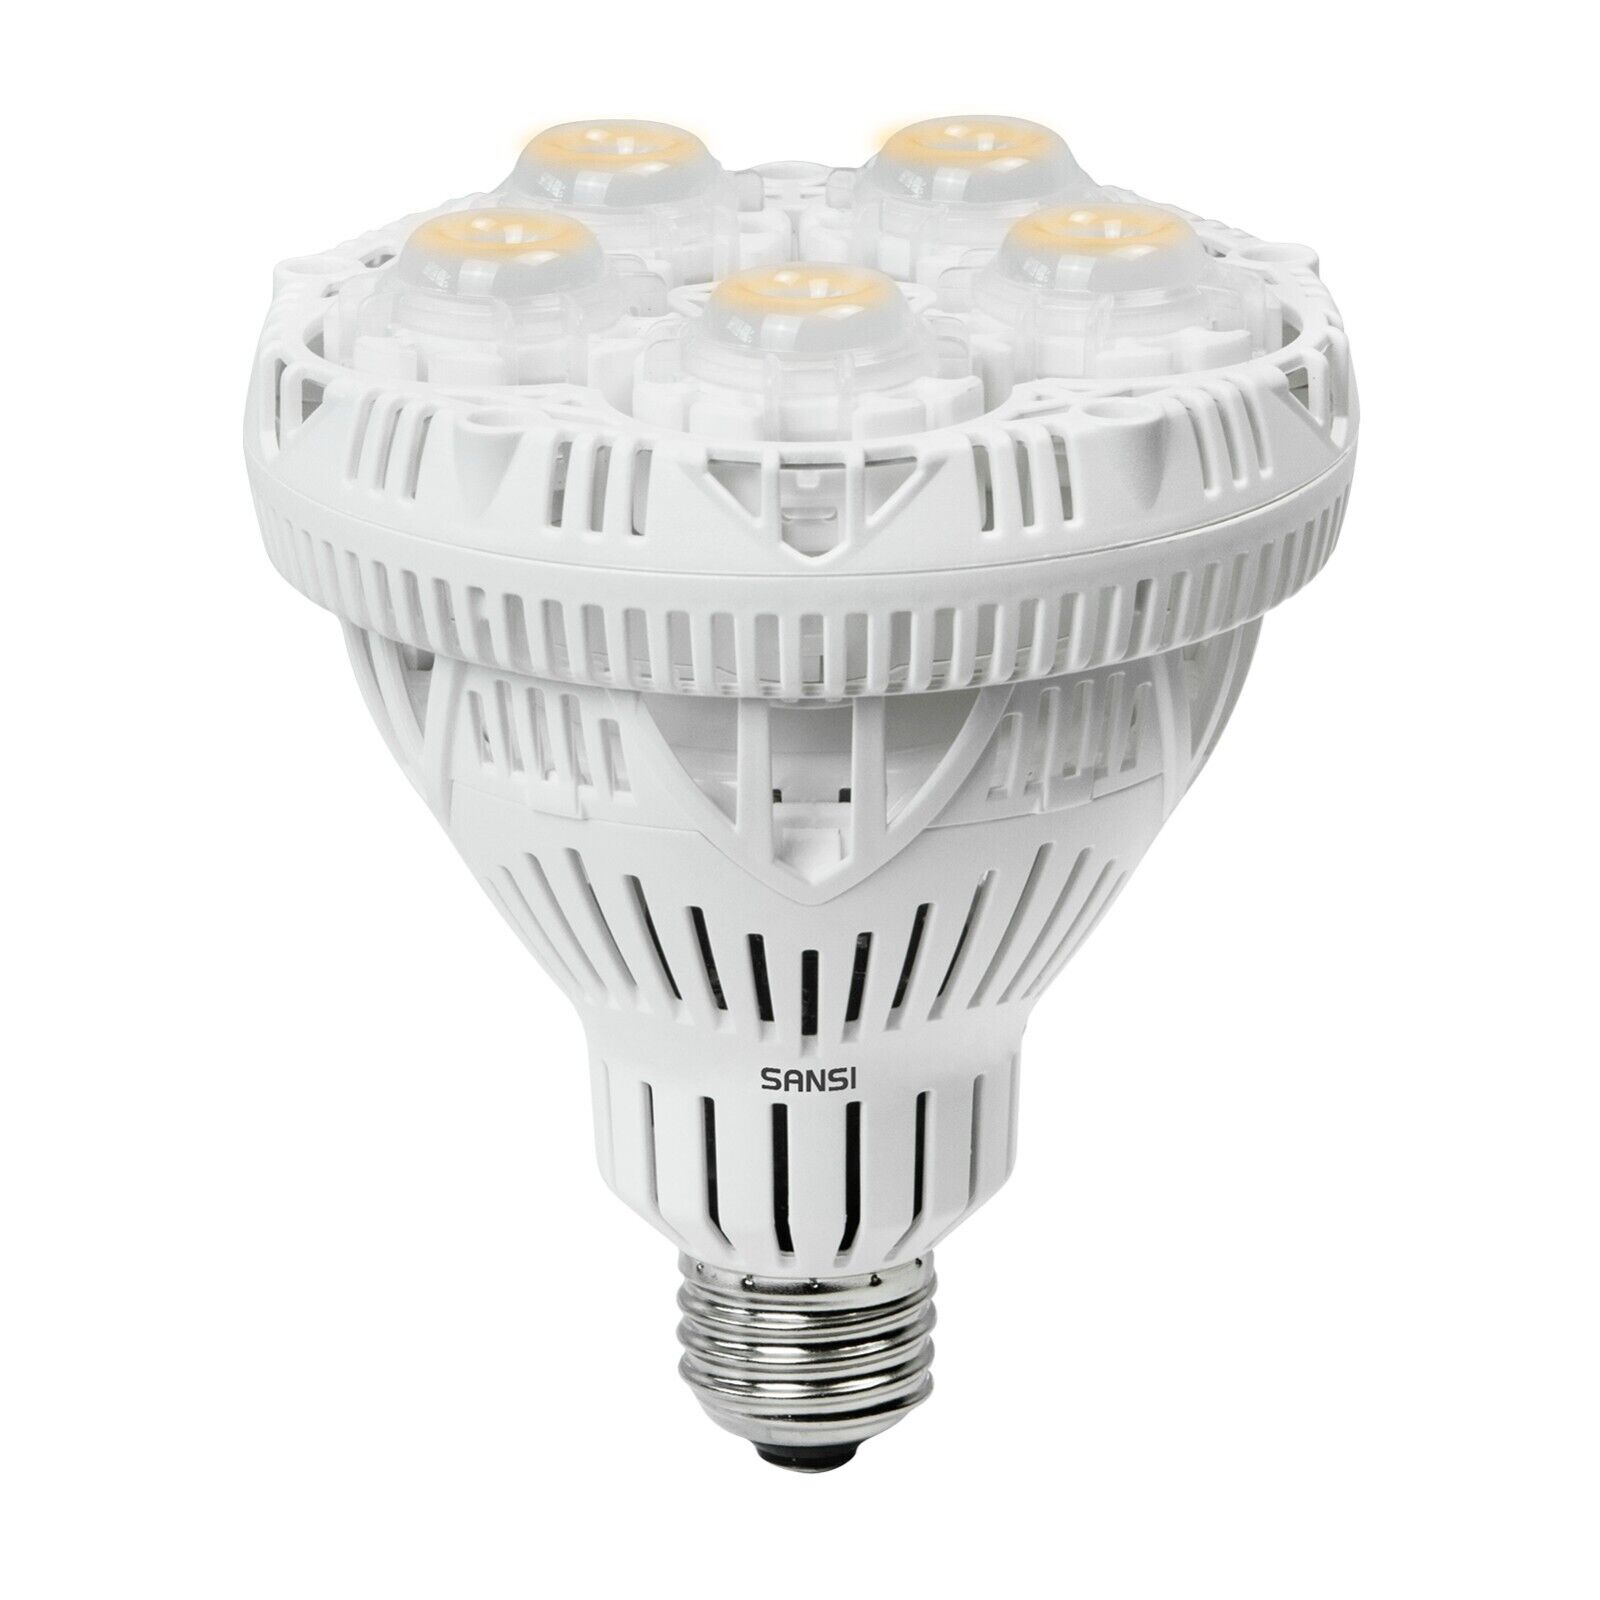 SANSI 36W/24W LED Plant Grow Light Bulb PPF 65.6 Full Spectrum Indoor Veg Bloom